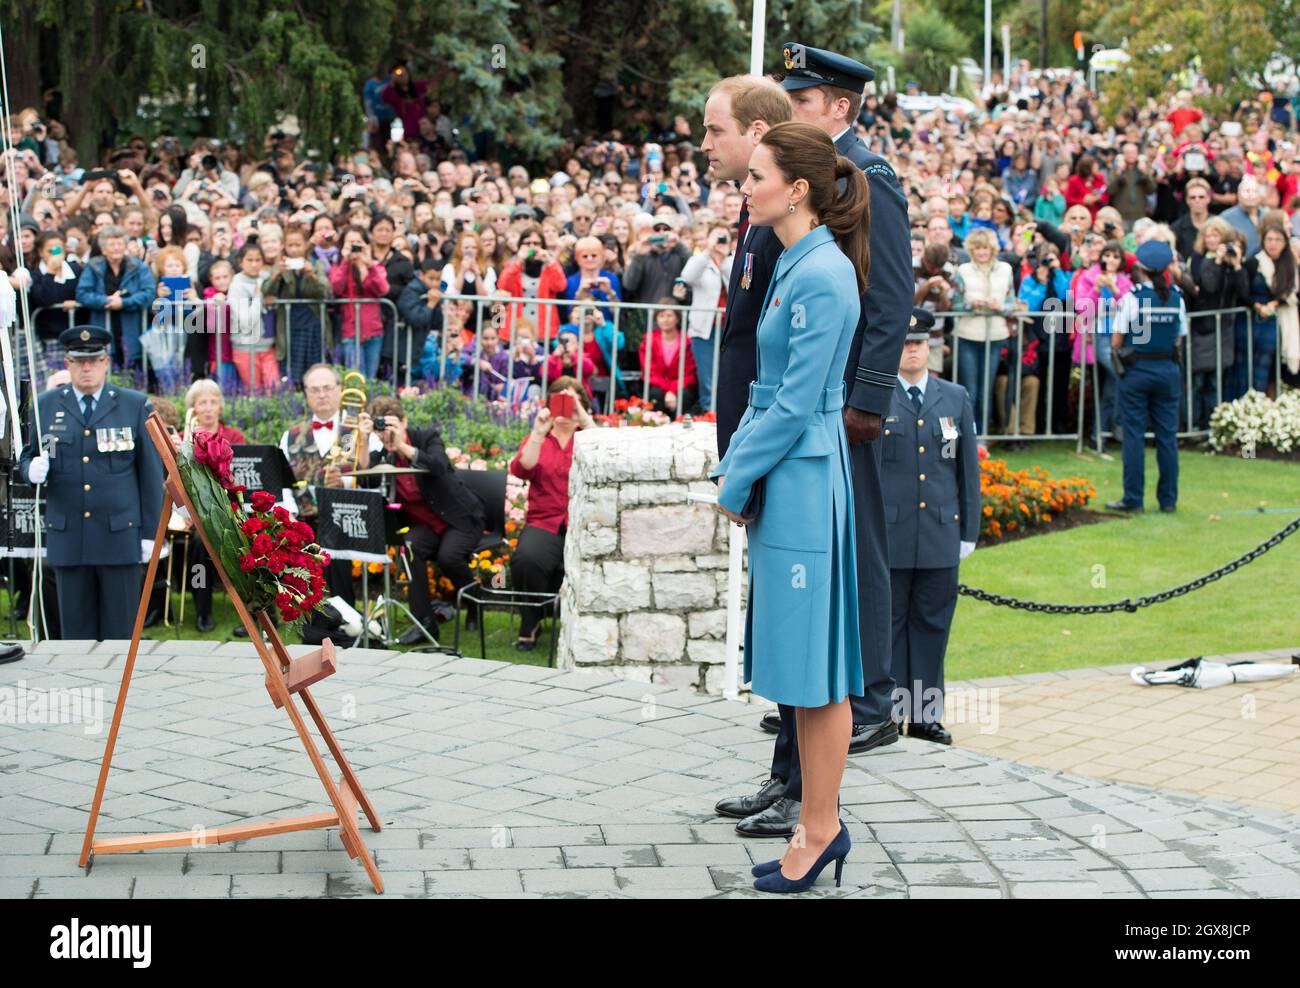 Catherine, duquesa de Cambridge y el príncipe Guillermo, duque de Cambridge asisten a una ceremonia de colocación de coronas y conmemoración en Seymour Square, Blenheim, Nueva Zelanda, el 10 de abril de 2014. La duquesa lleva un traje azul del diseñador Alexander McQueen. Foto de stock